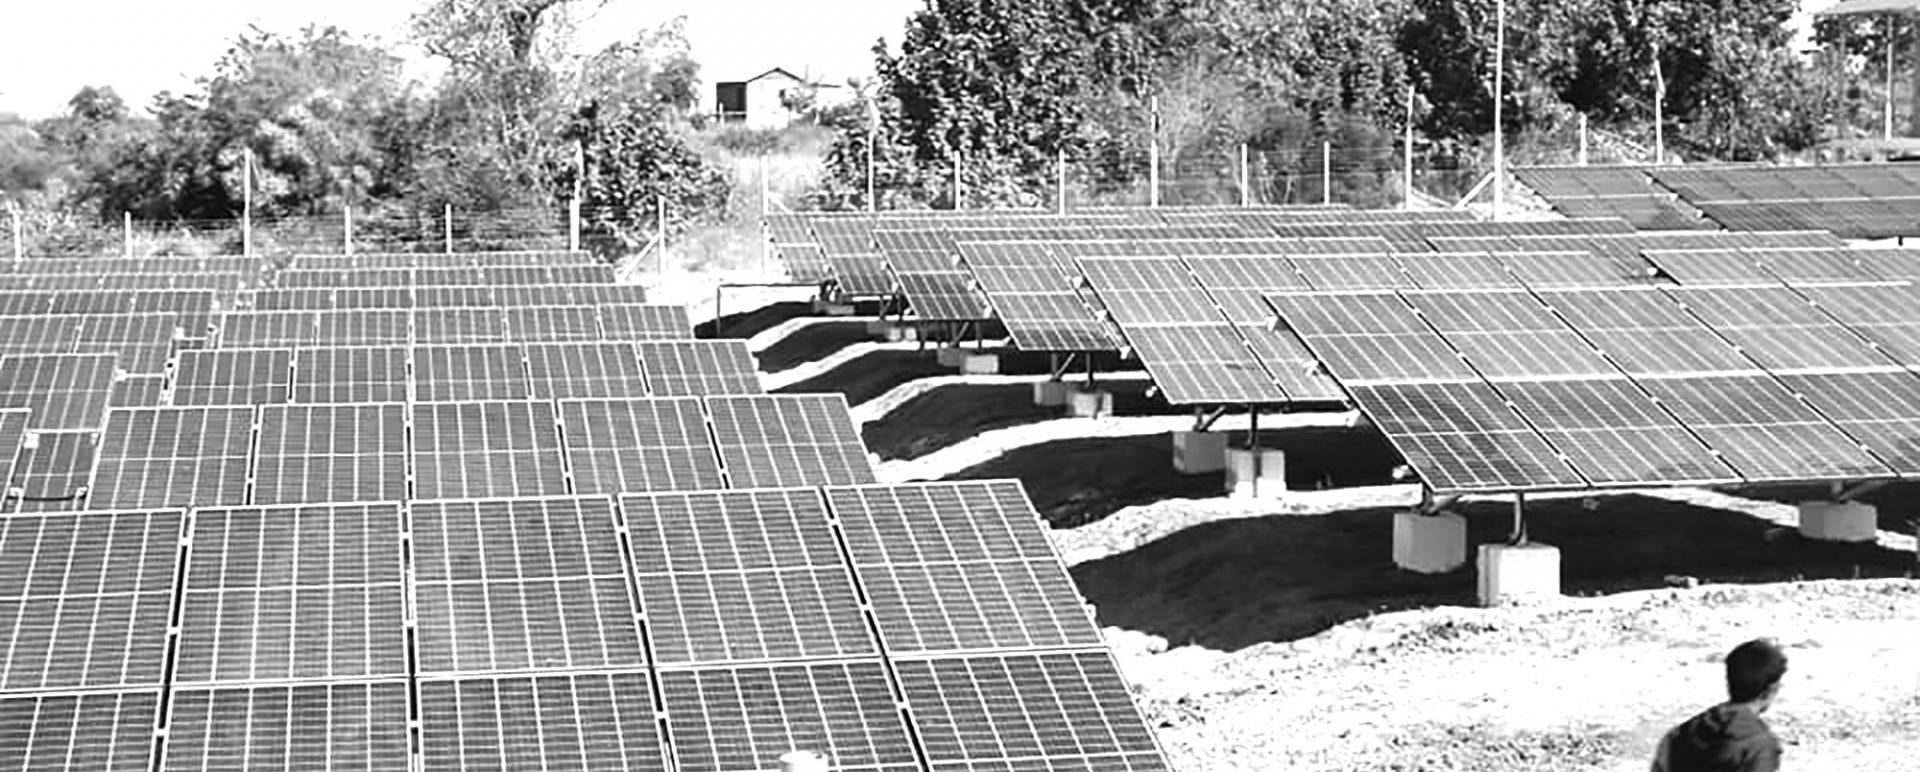 A solar mini-grid in Lelma village, Hsinpaungwel Township, Magway Region.